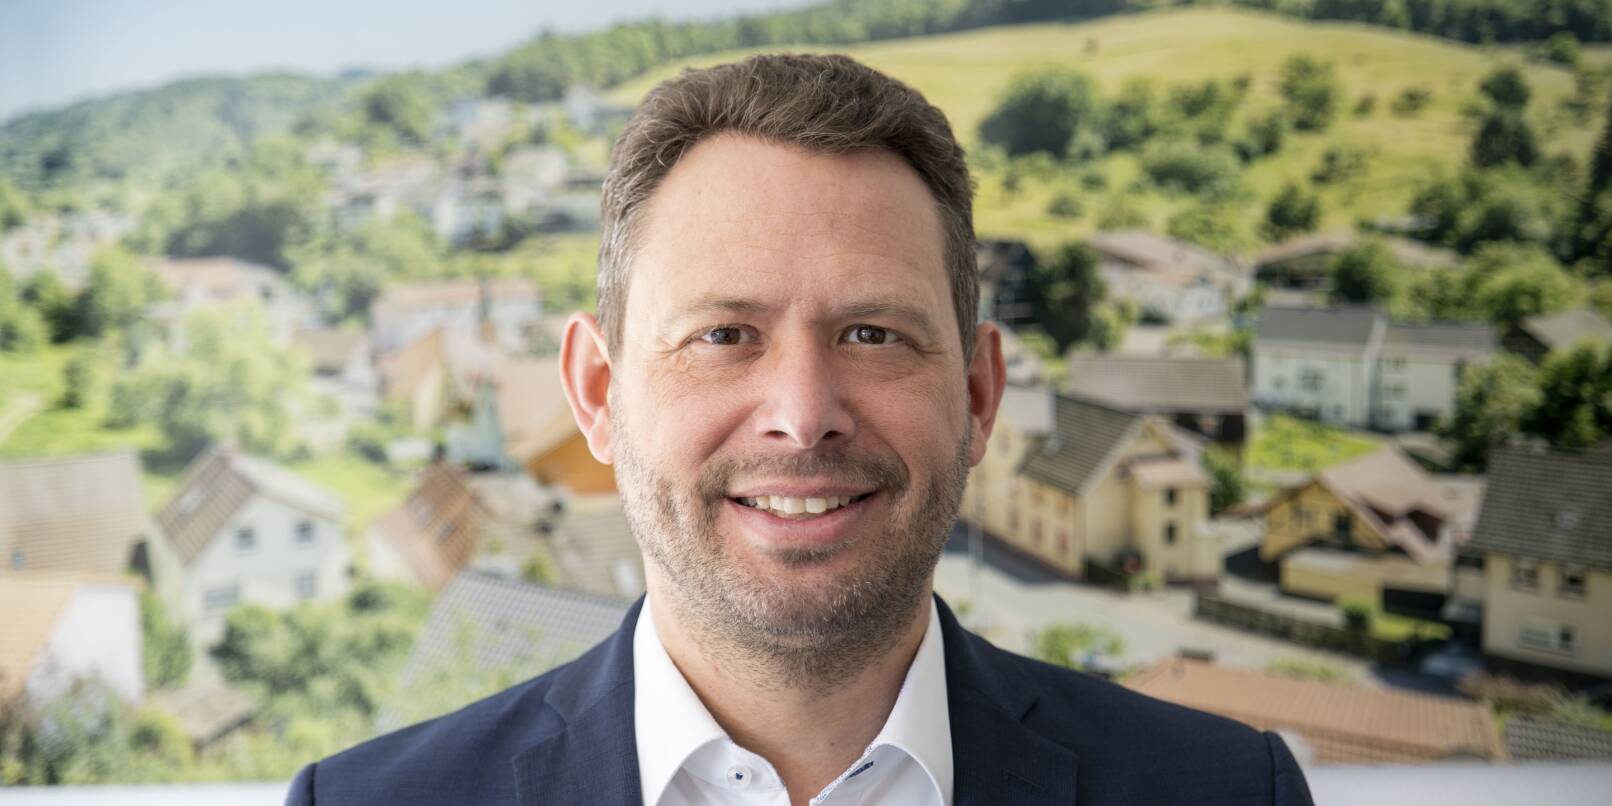 Die Bürgermeisterwahl in Gorxheimertal findet am 8. Oktober statt: Frank Kohl wirft als Erster seinen Hut in den Ring.